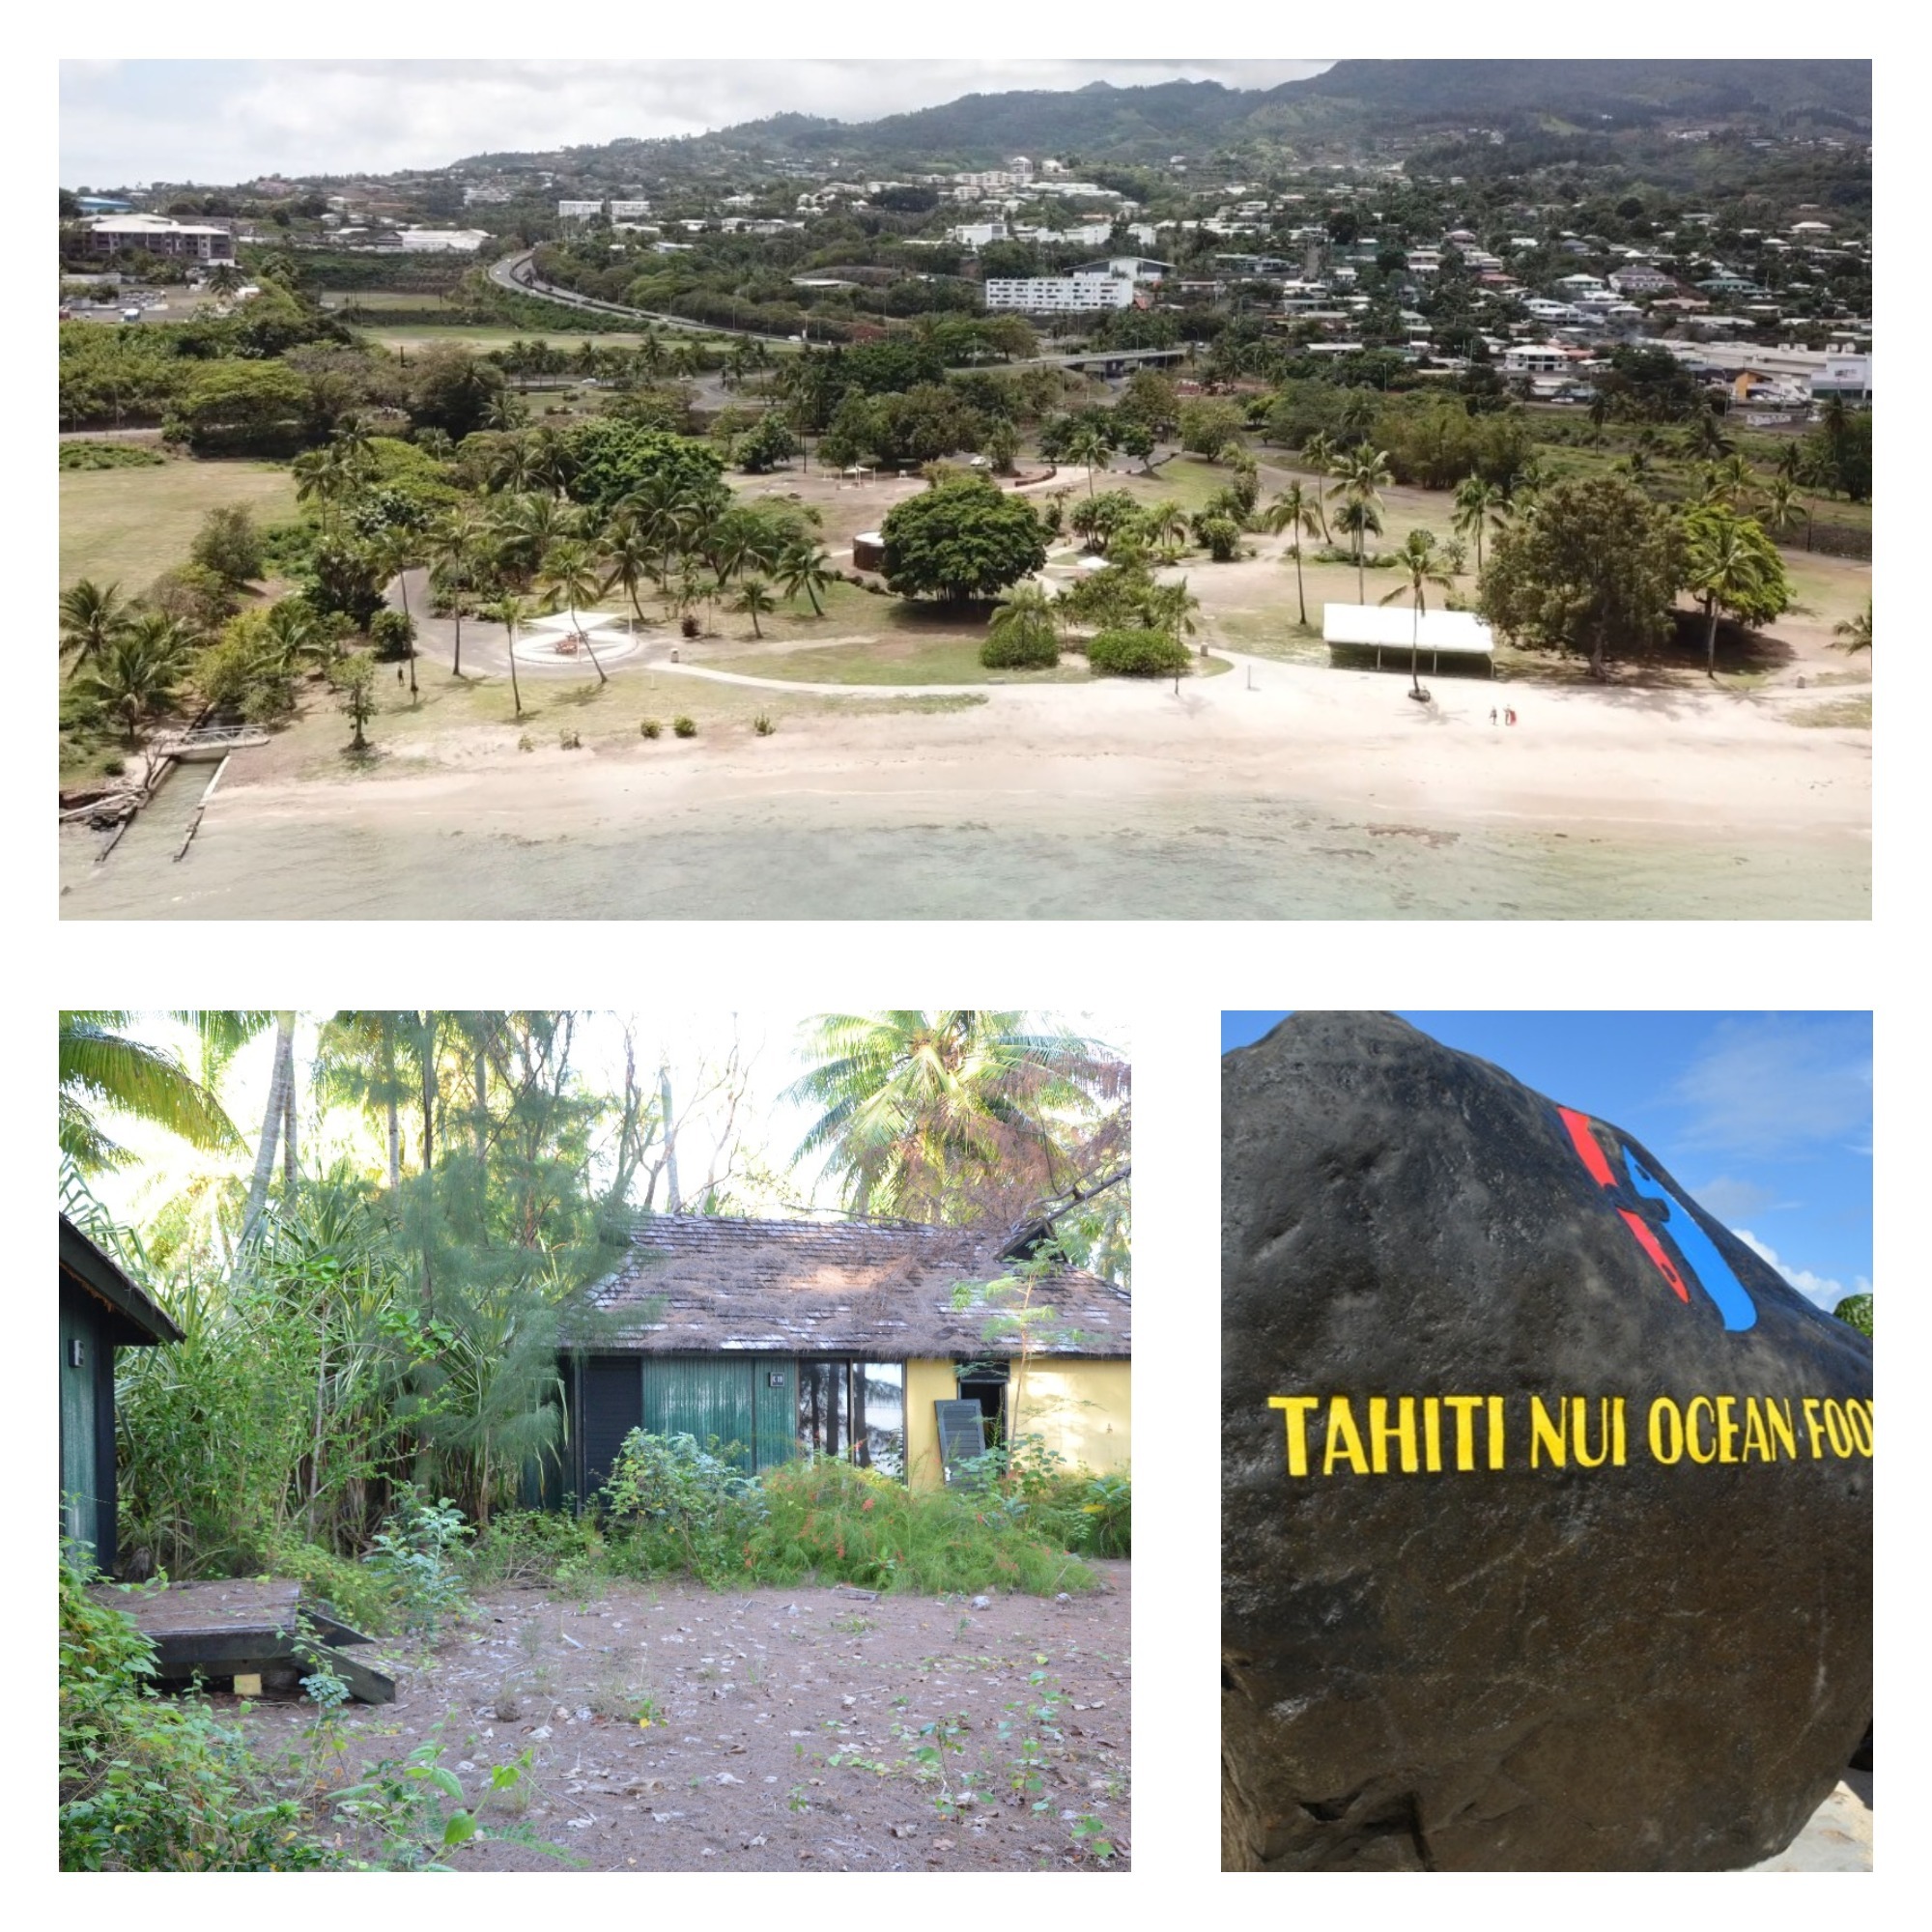 La ferme aquacole de Hao, le Village tahitien et le Moorea Mahana Beach le complexe de Atimanono sont les quatre "zones de développement prioritaire".